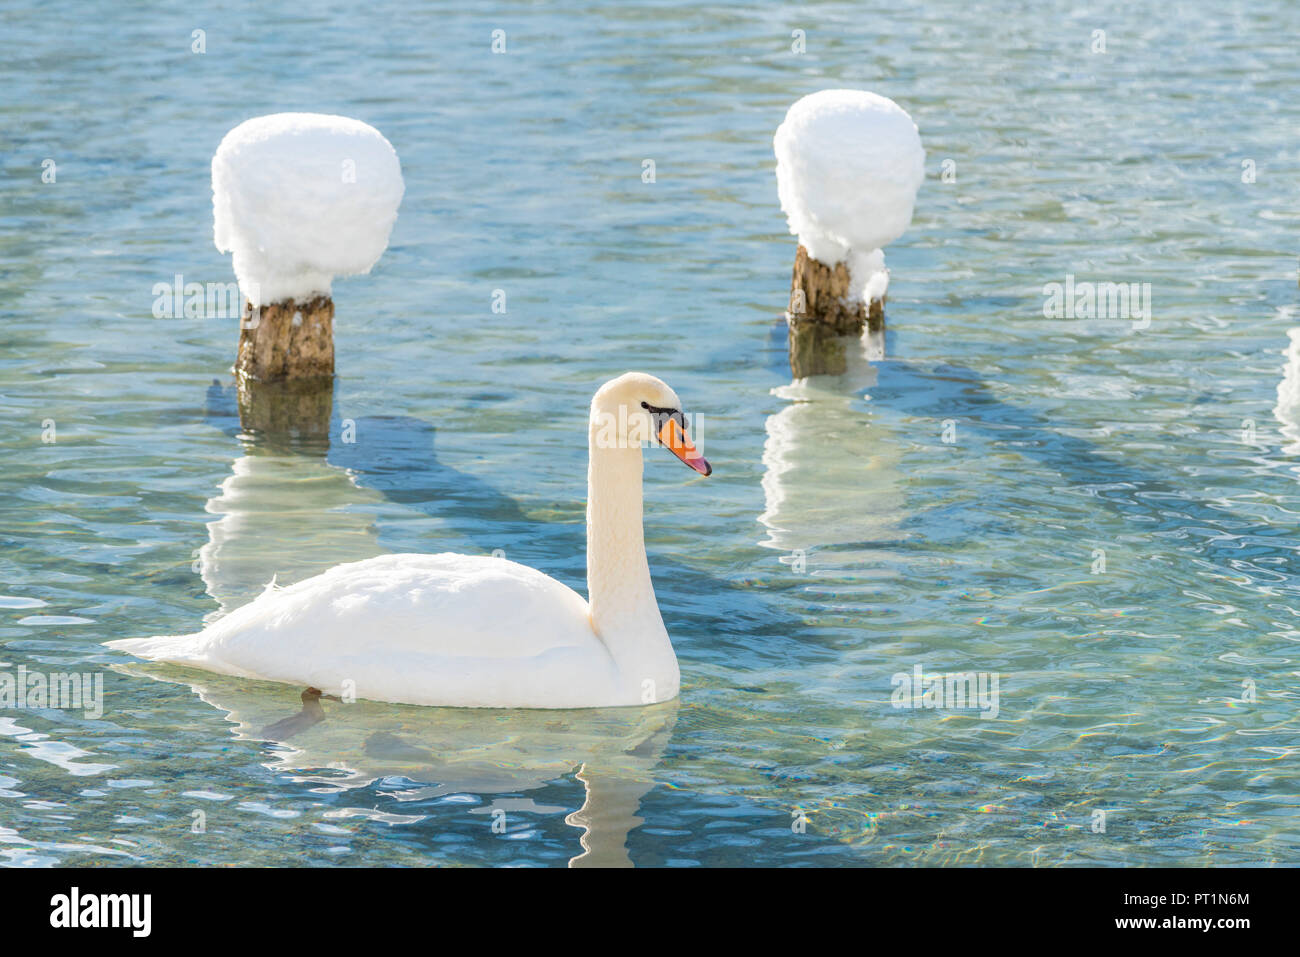 Dobbiaco / Toblach, provincia de Bolzano, Tirol del Sur, Italia, el invierno en el lago Dobbiaco con cisne flotante Foto de stock